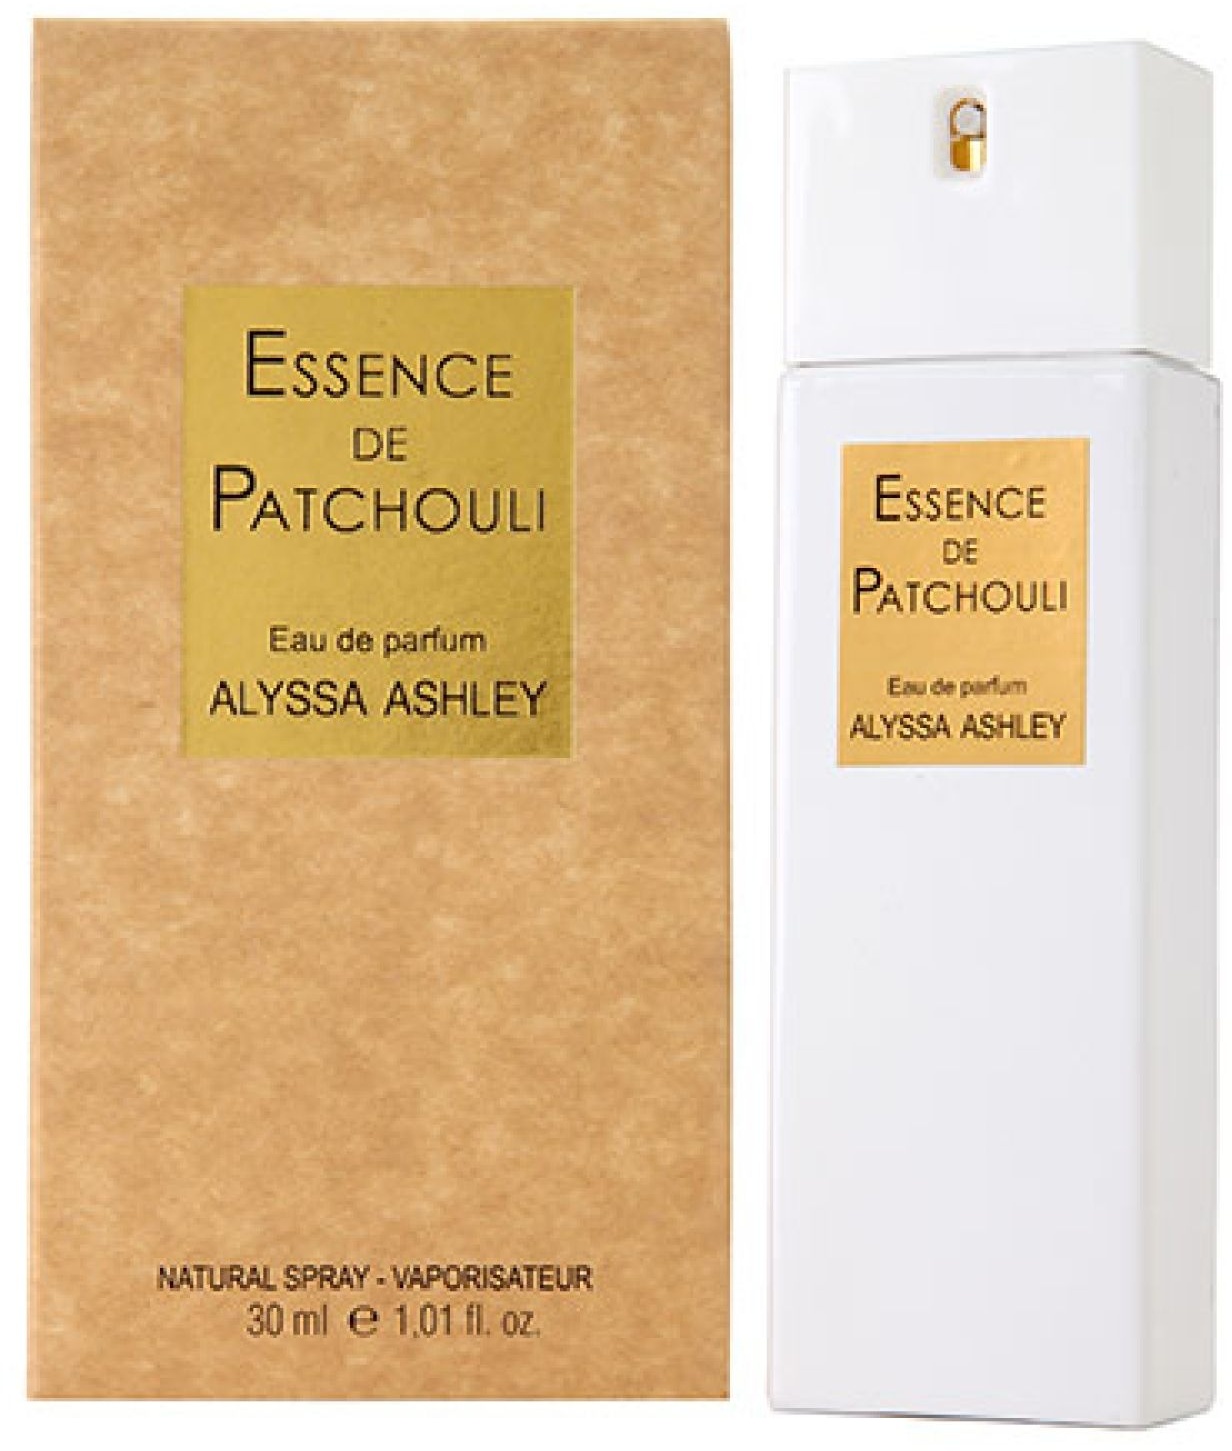 Essence de Patchouli Eau Parfum Spray 30 ml